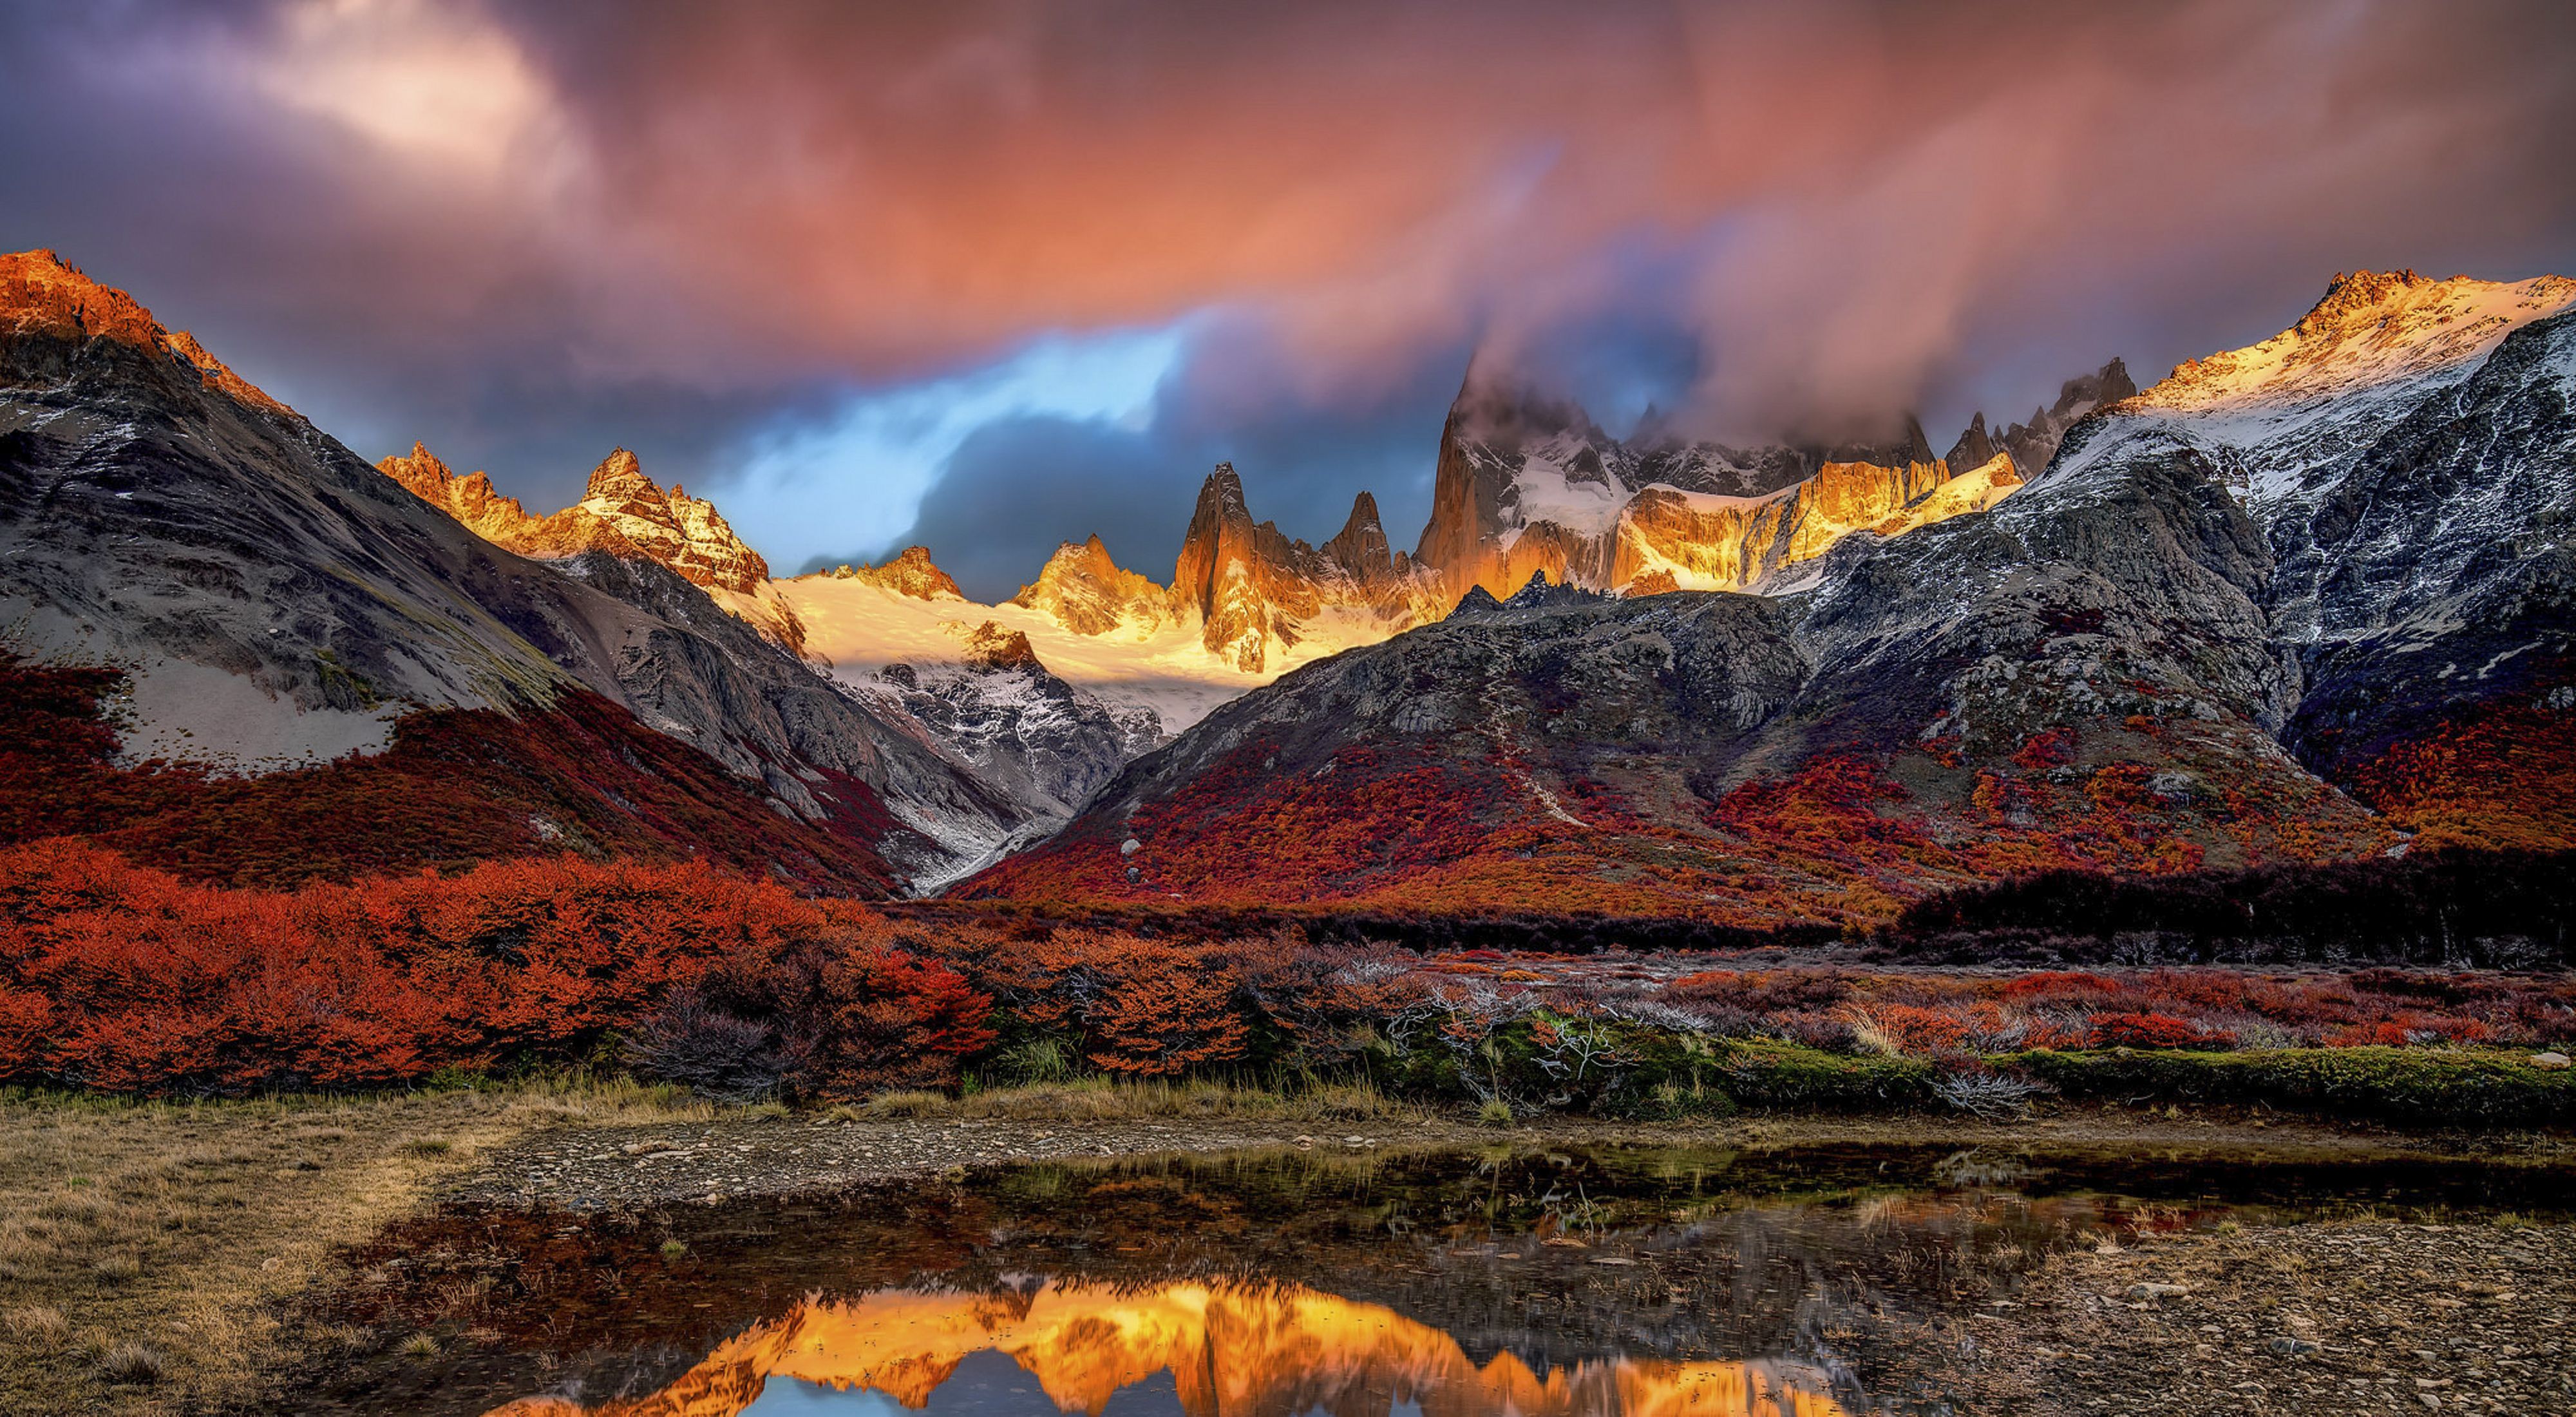 Un hermoso paisaje en la Patagonia, Argentina